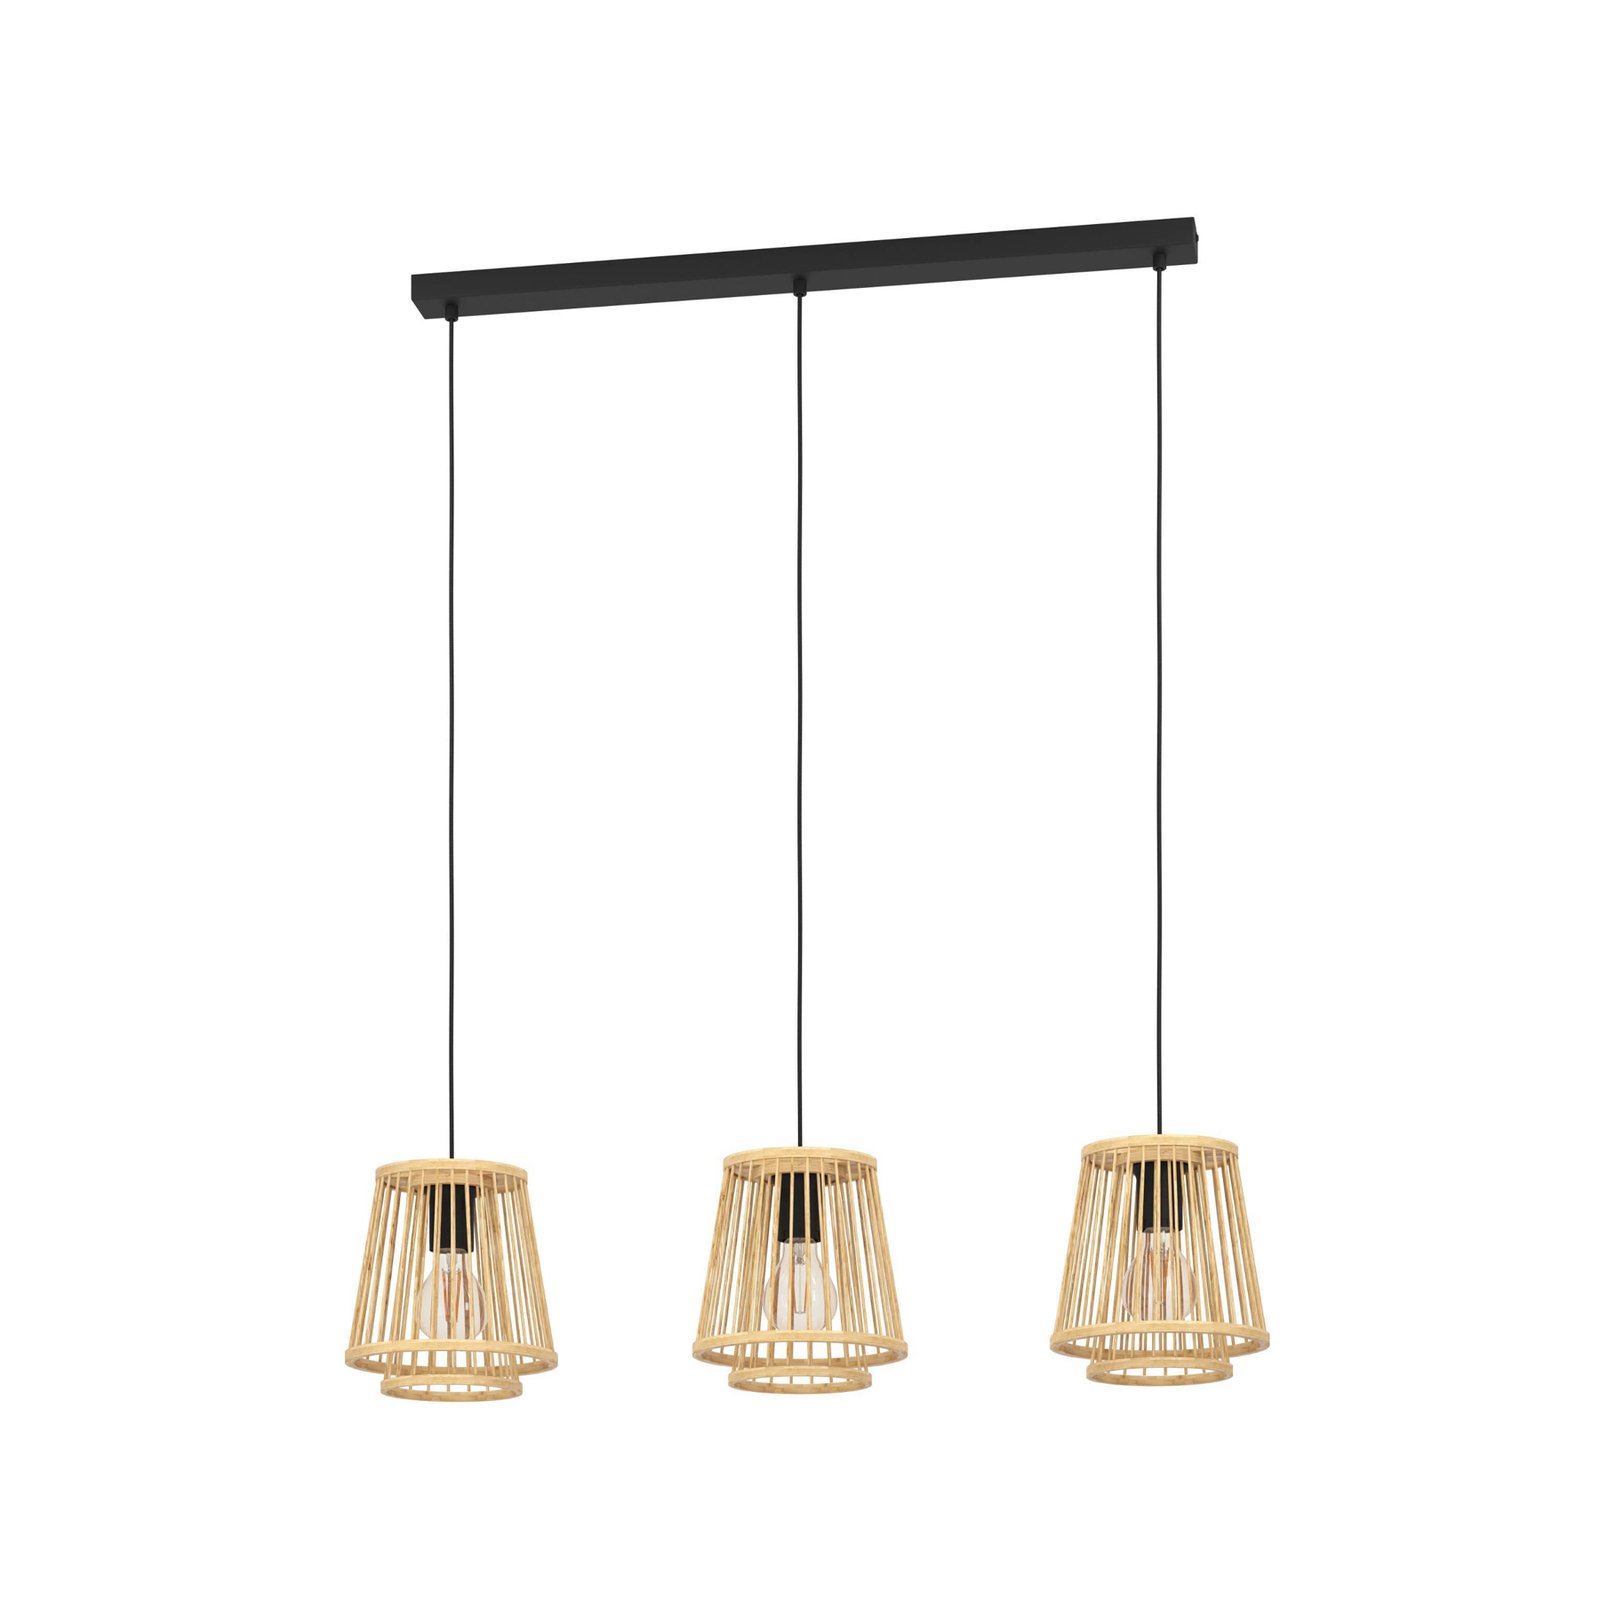 Candeeiro suspenso Hykeham, comprimento 91 cm, natural, 3 lâmpadas, bambu